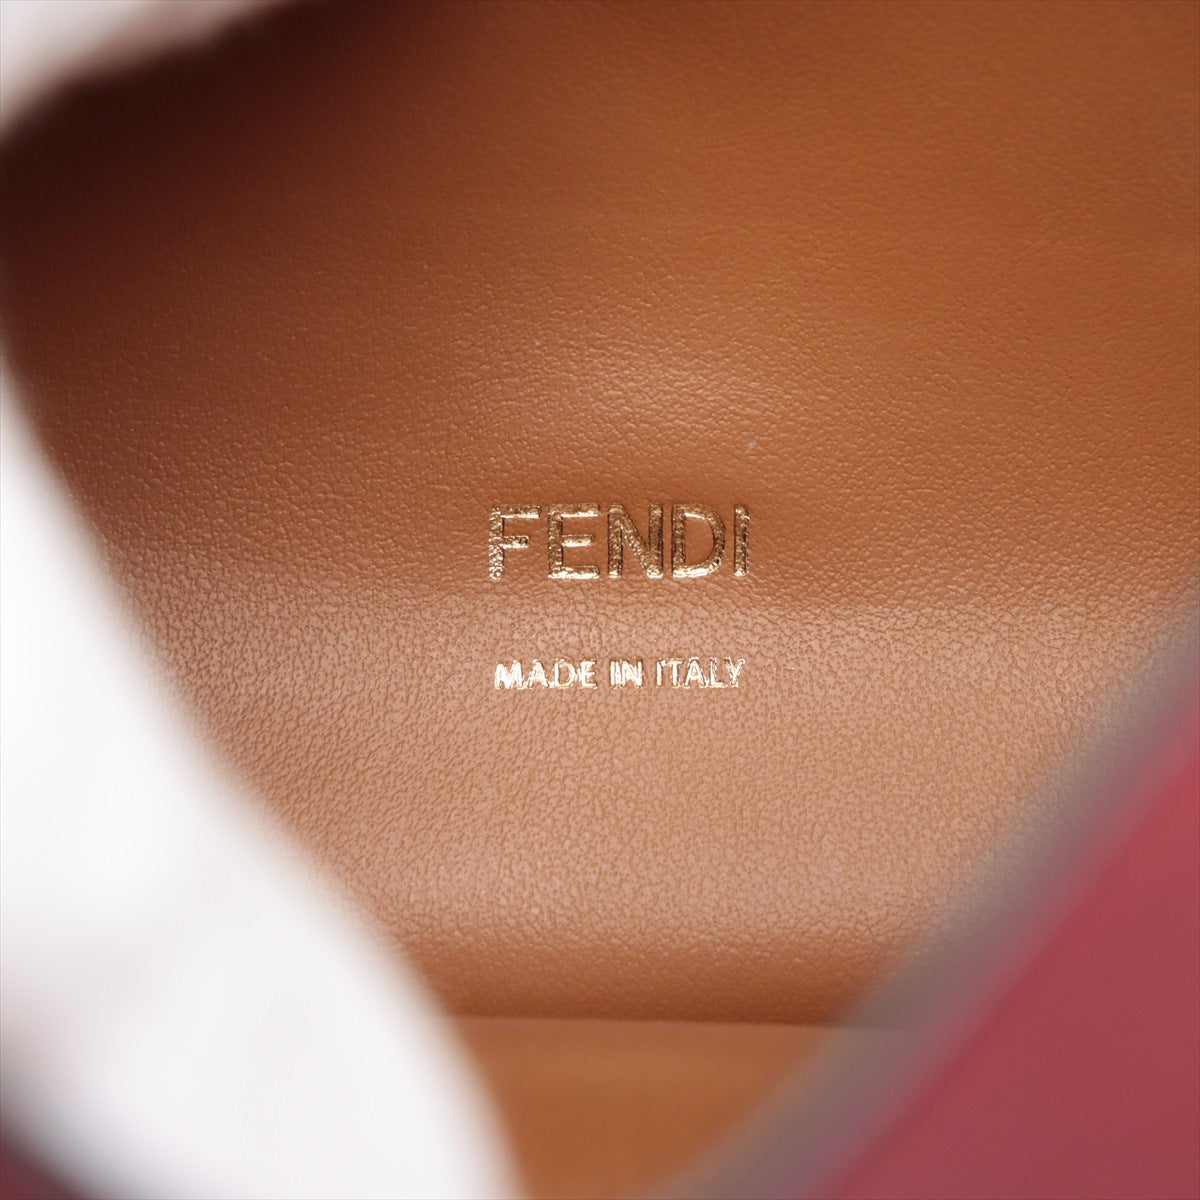 Fendi Canyon Leather Shoulder Bag Red 8BT313